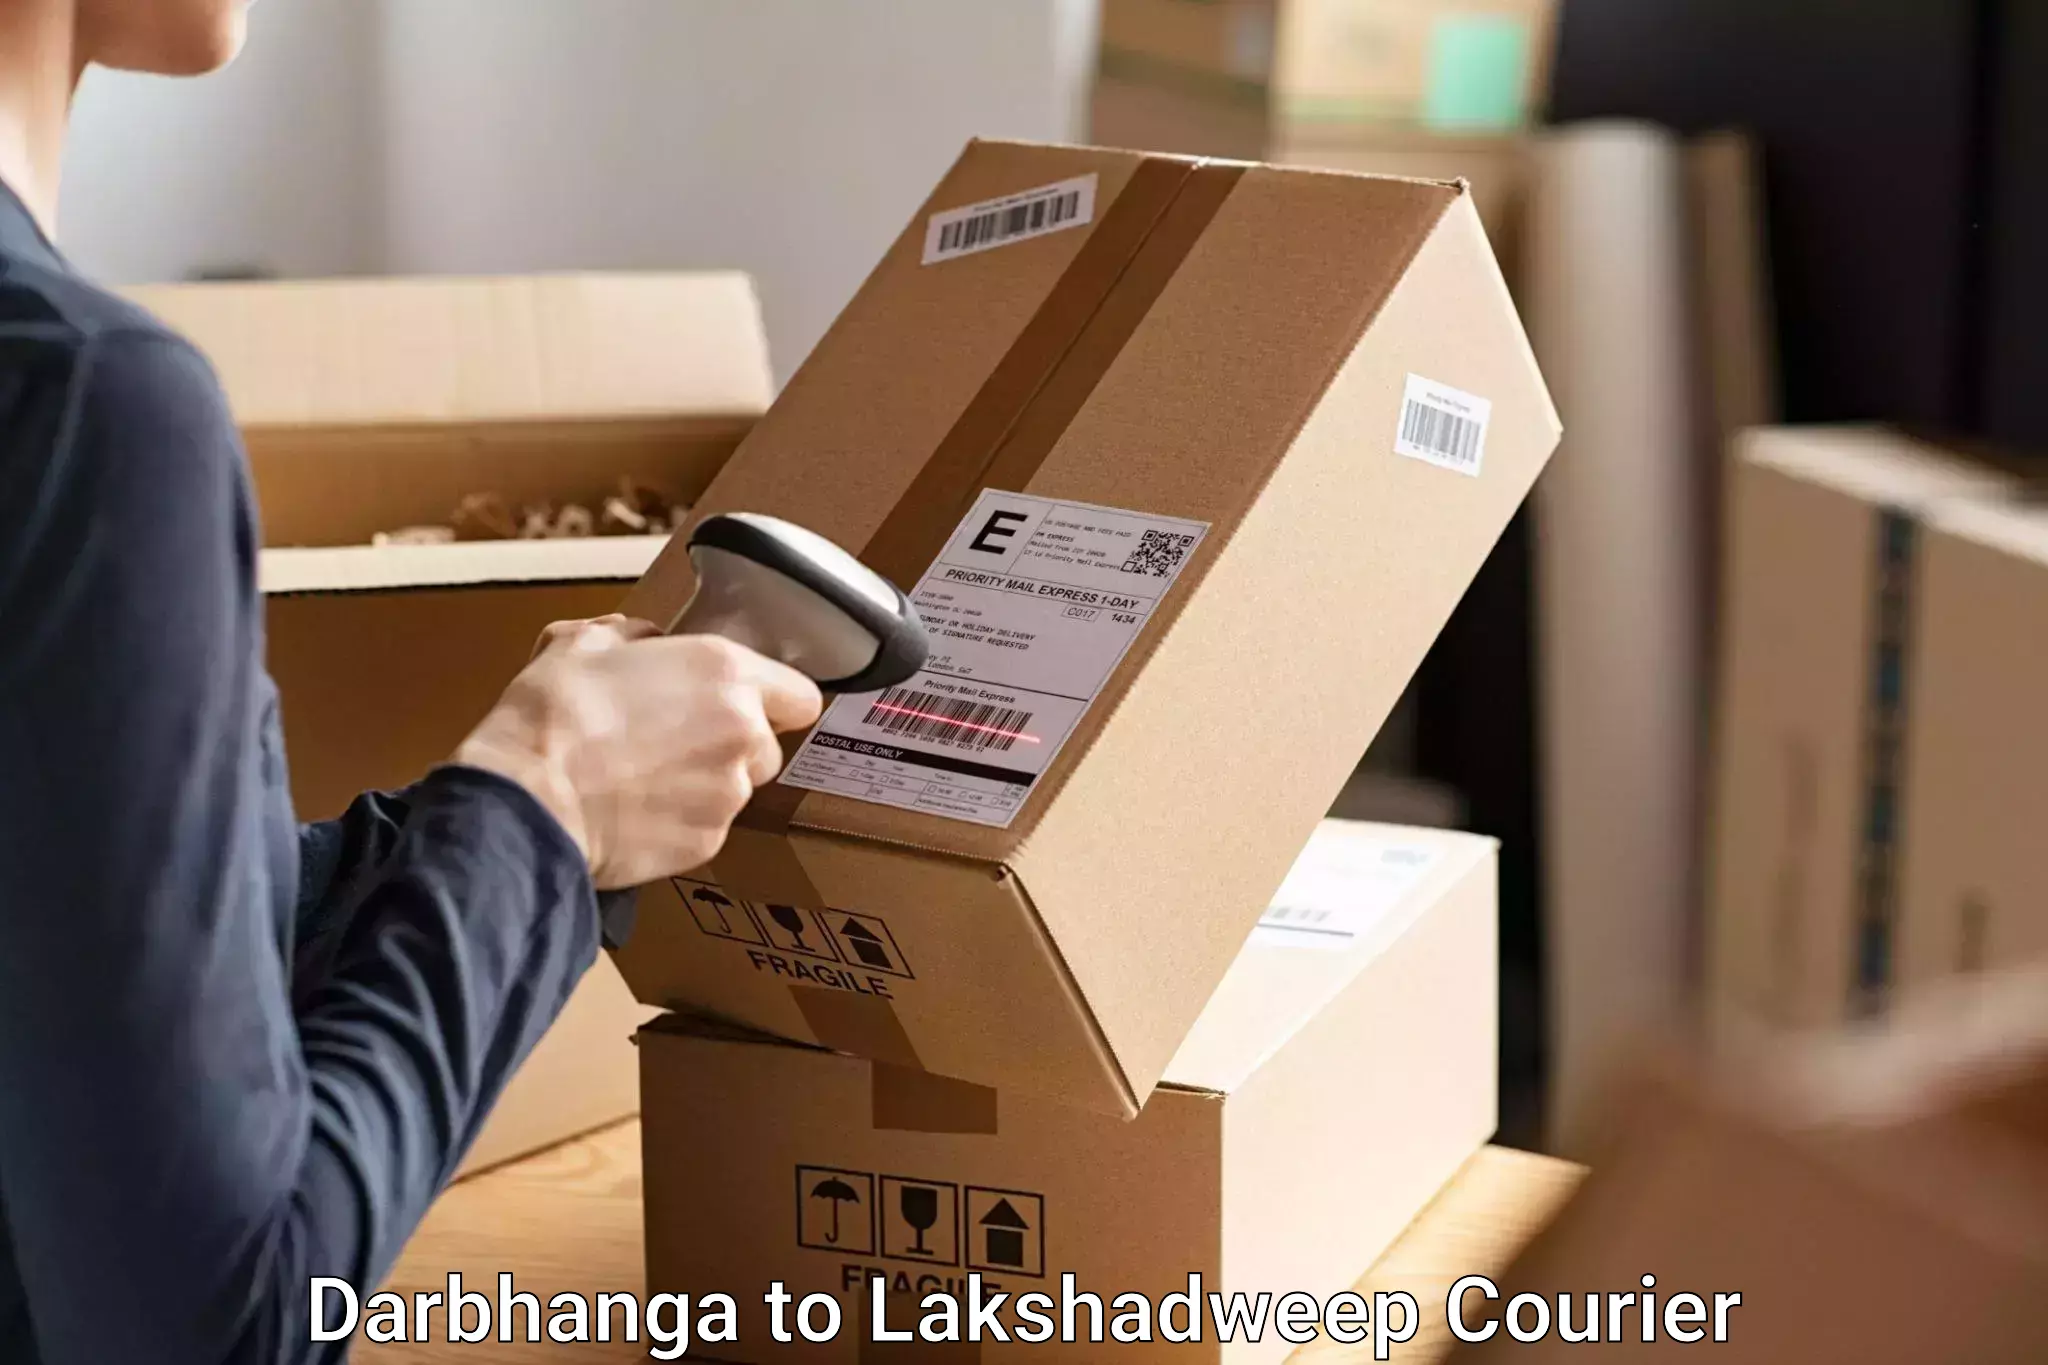 Luggage delivery optimization Darbhanga to Lakshadweep